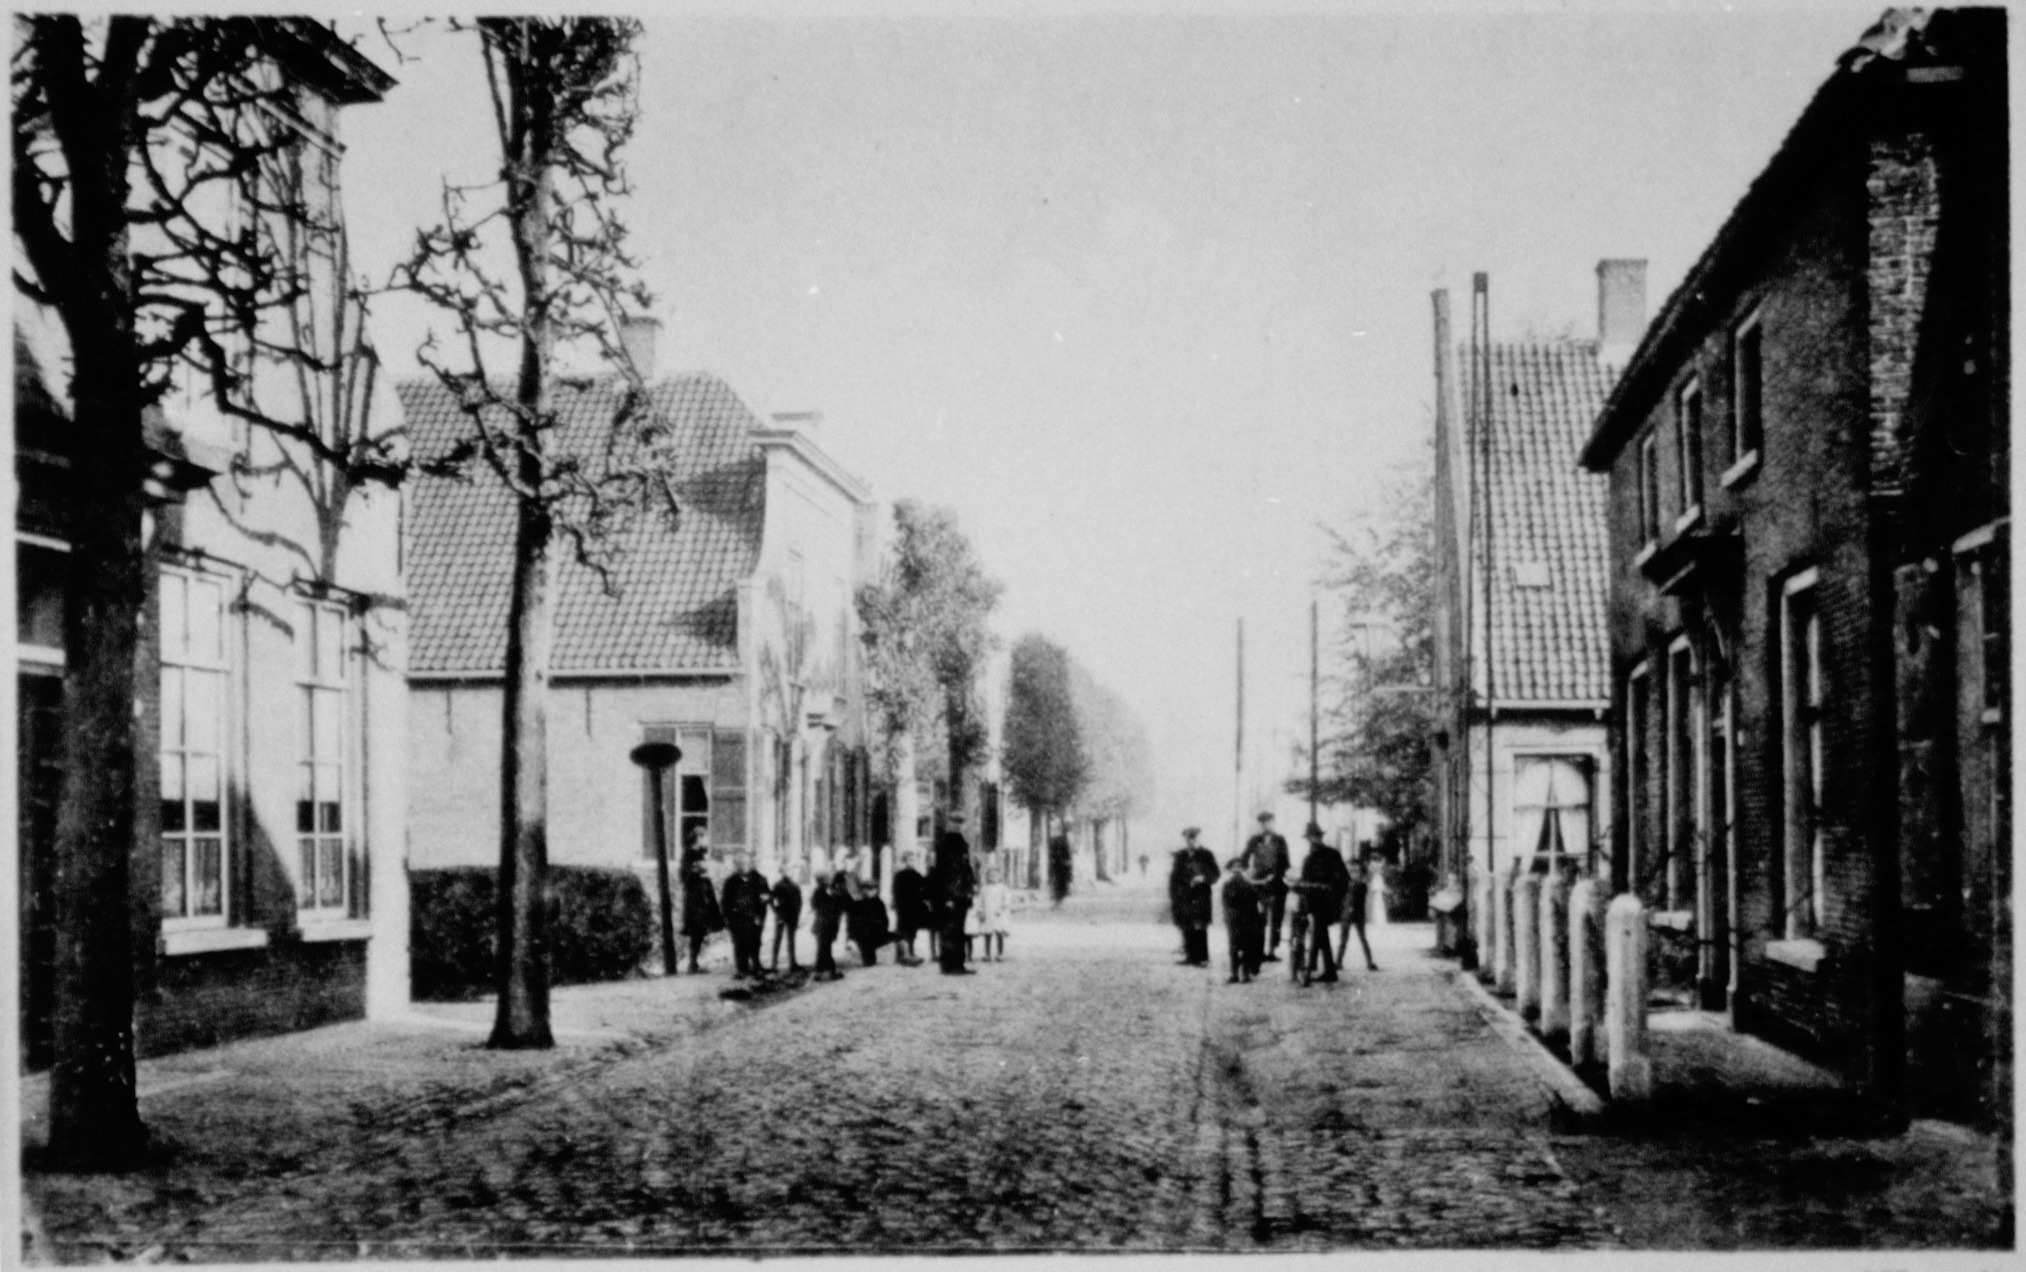  't Vaartje, ca. 1900